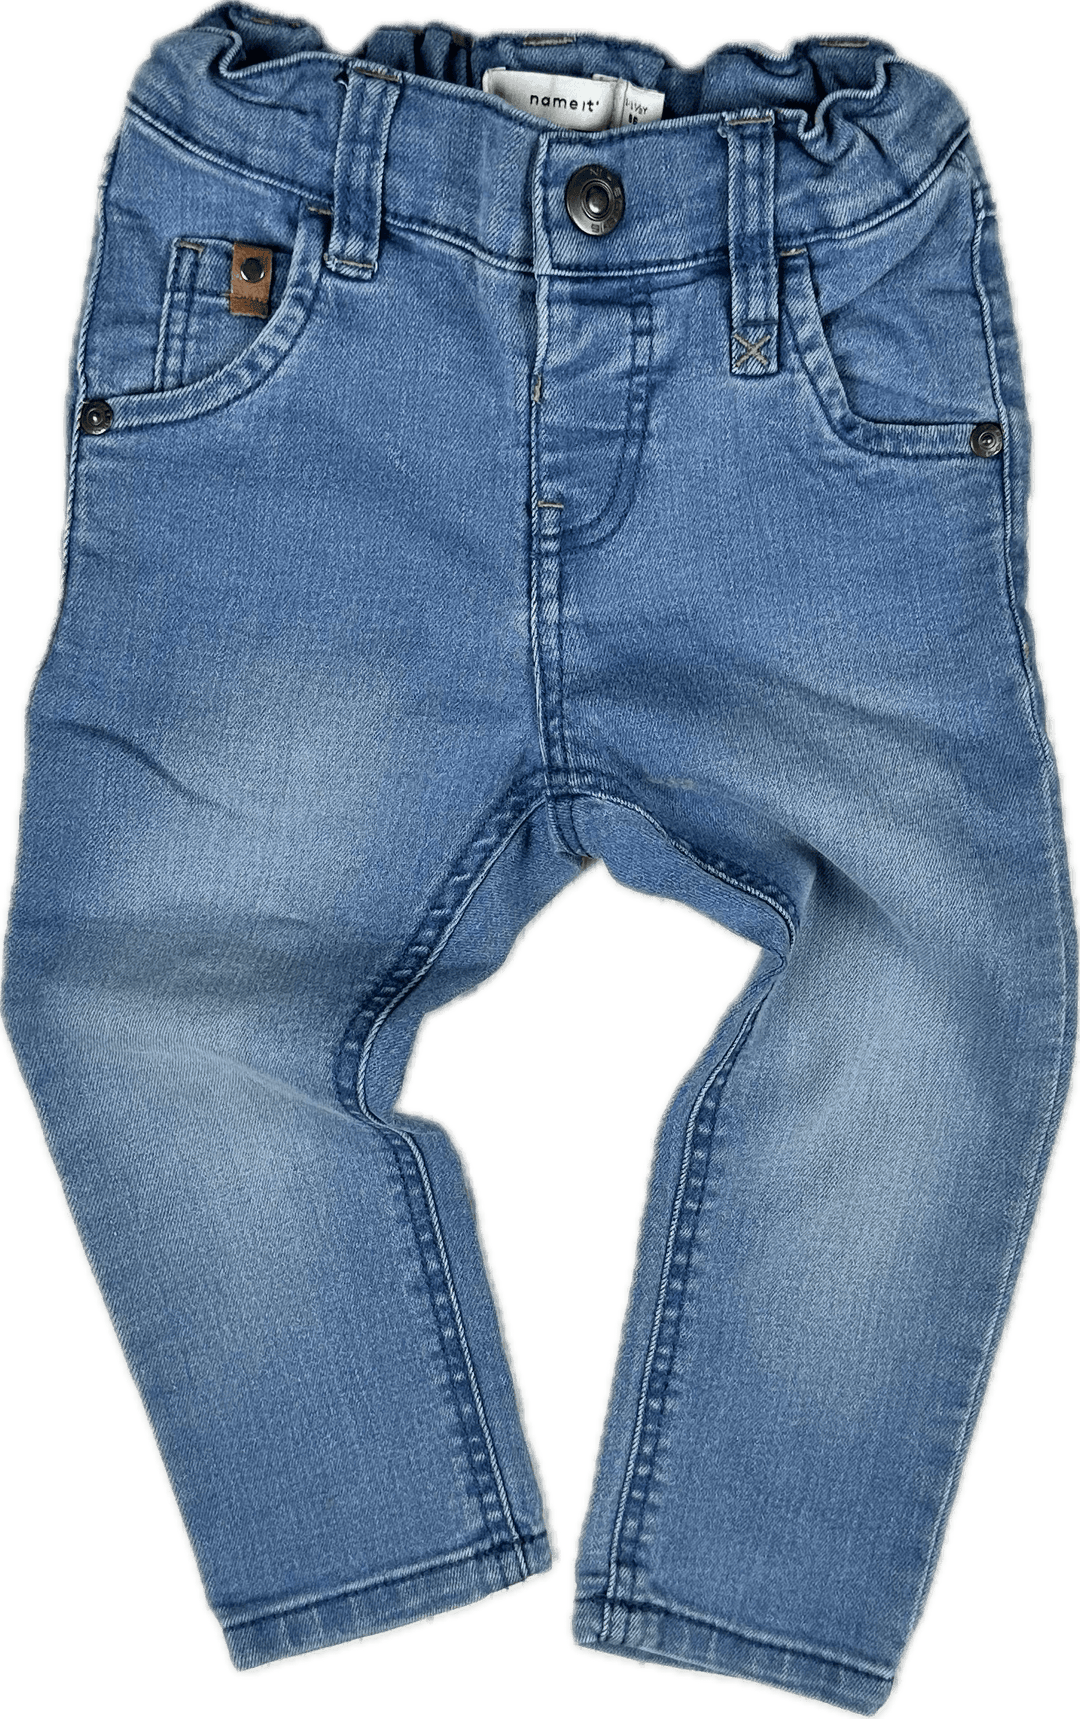 Name It Denmark Toddler Skinny Jeans - Size 12/18M - Jean Pool